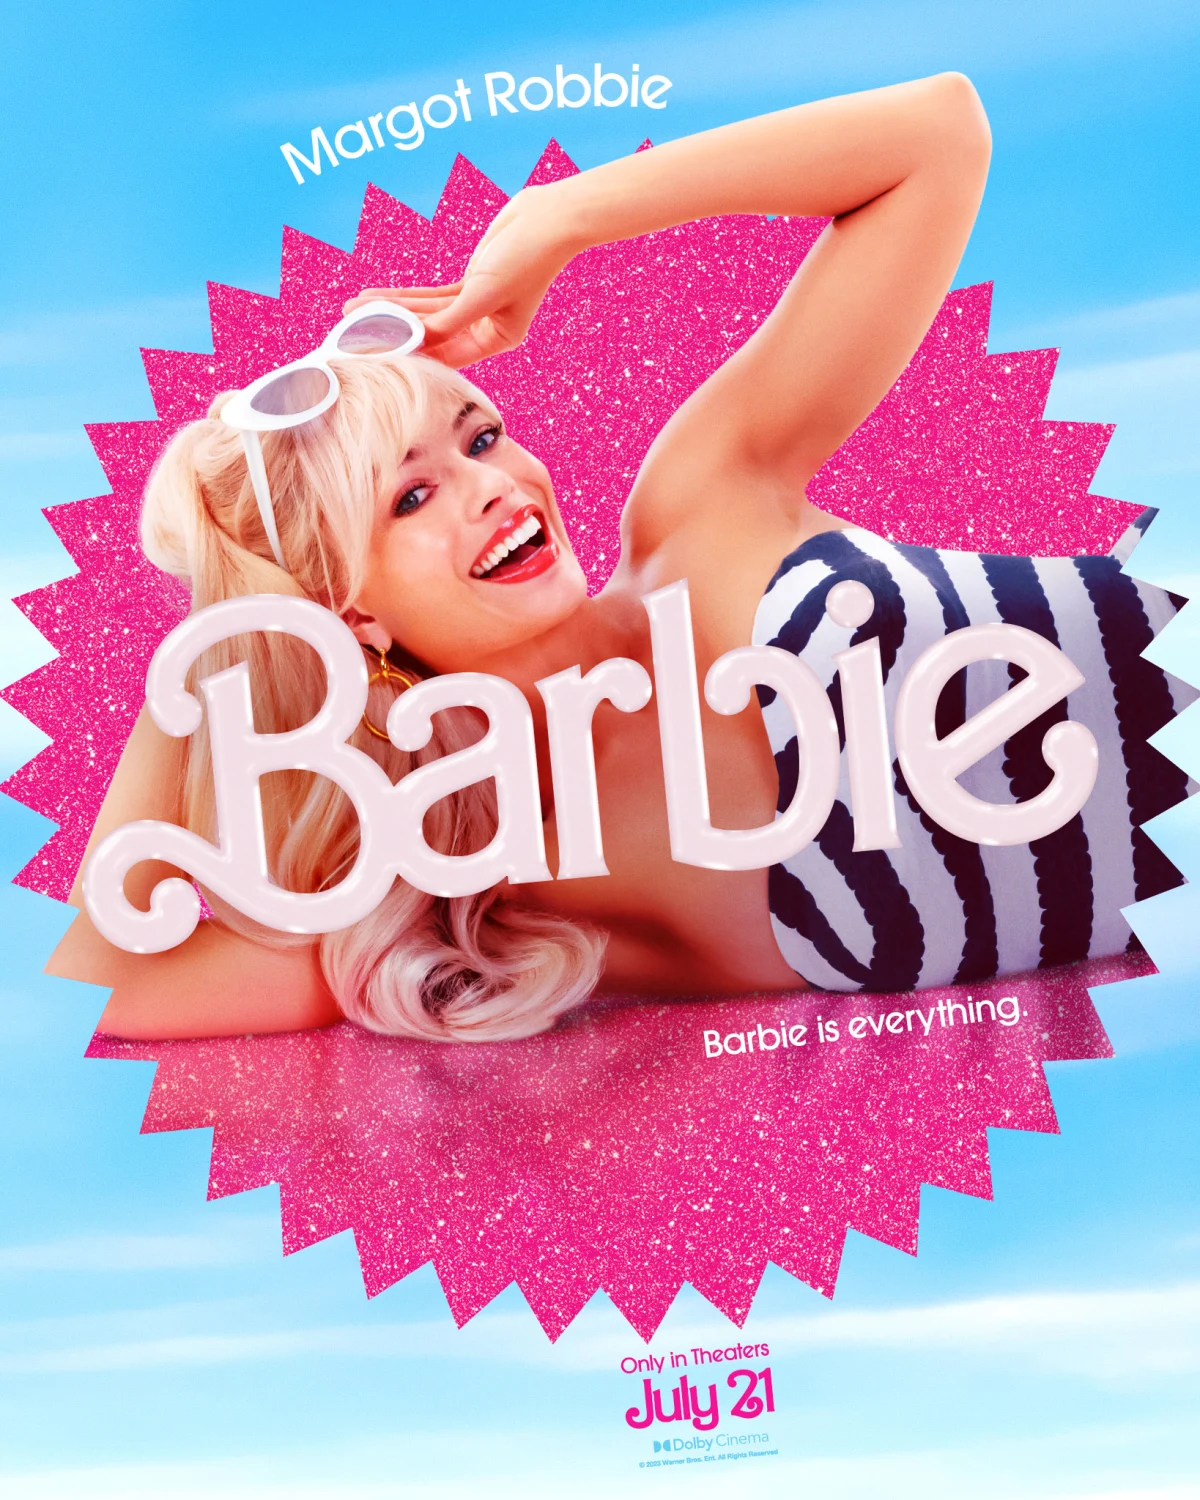 Los looks de Margot Robbie y Ryan Gosling en la película de Barbie